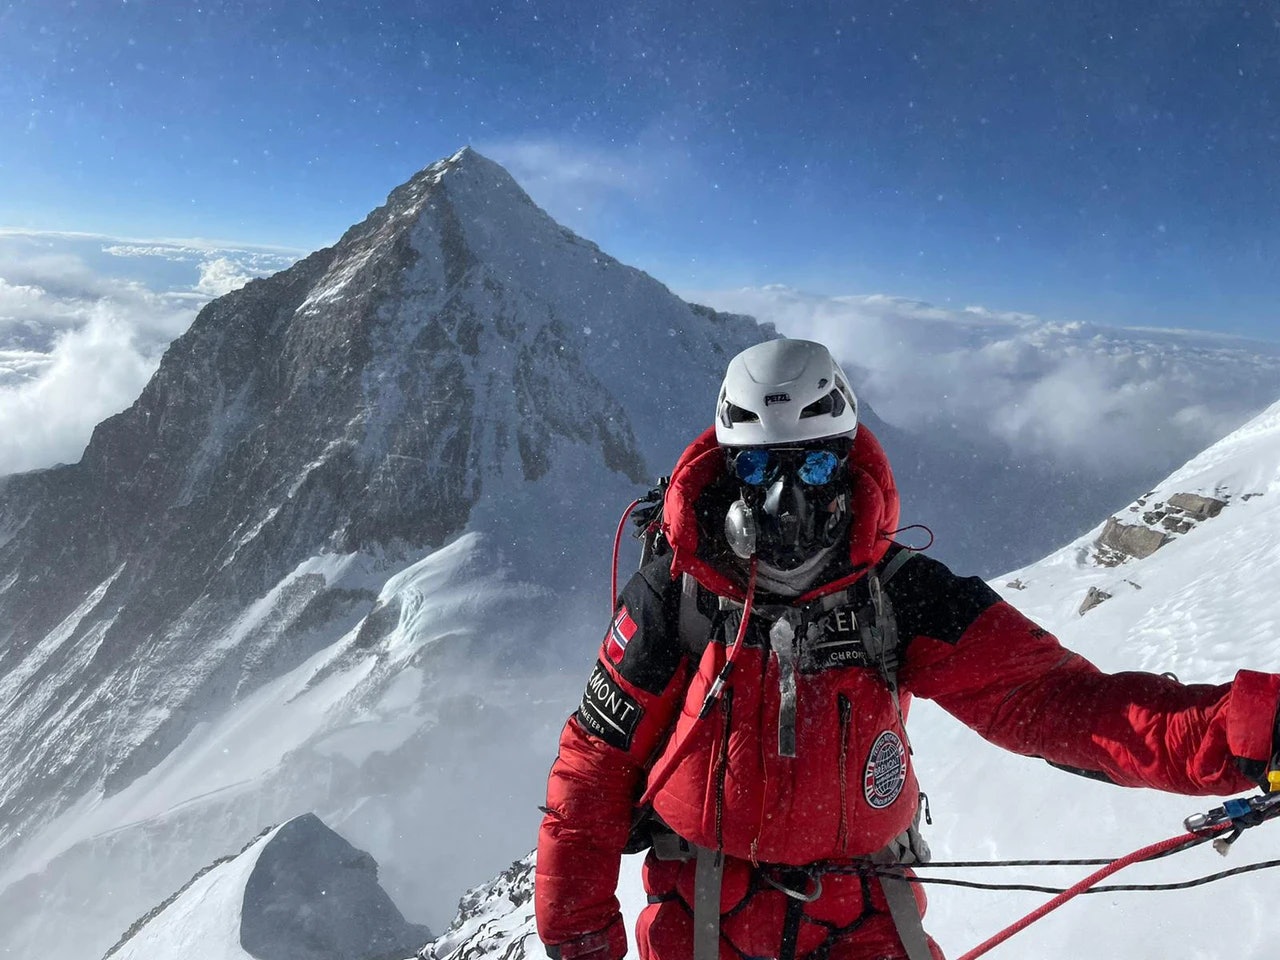 MOTGANG FRA KINESISK BYRÅKRATI: Kristin Harila mangler nødvendige tillatelser for å klatre Shishapangma i Tibet, i jakten på verdensrekord. Her er hun vei opp Lhotse med Everest i bakgrunnen. Foto: 8K Expeditions